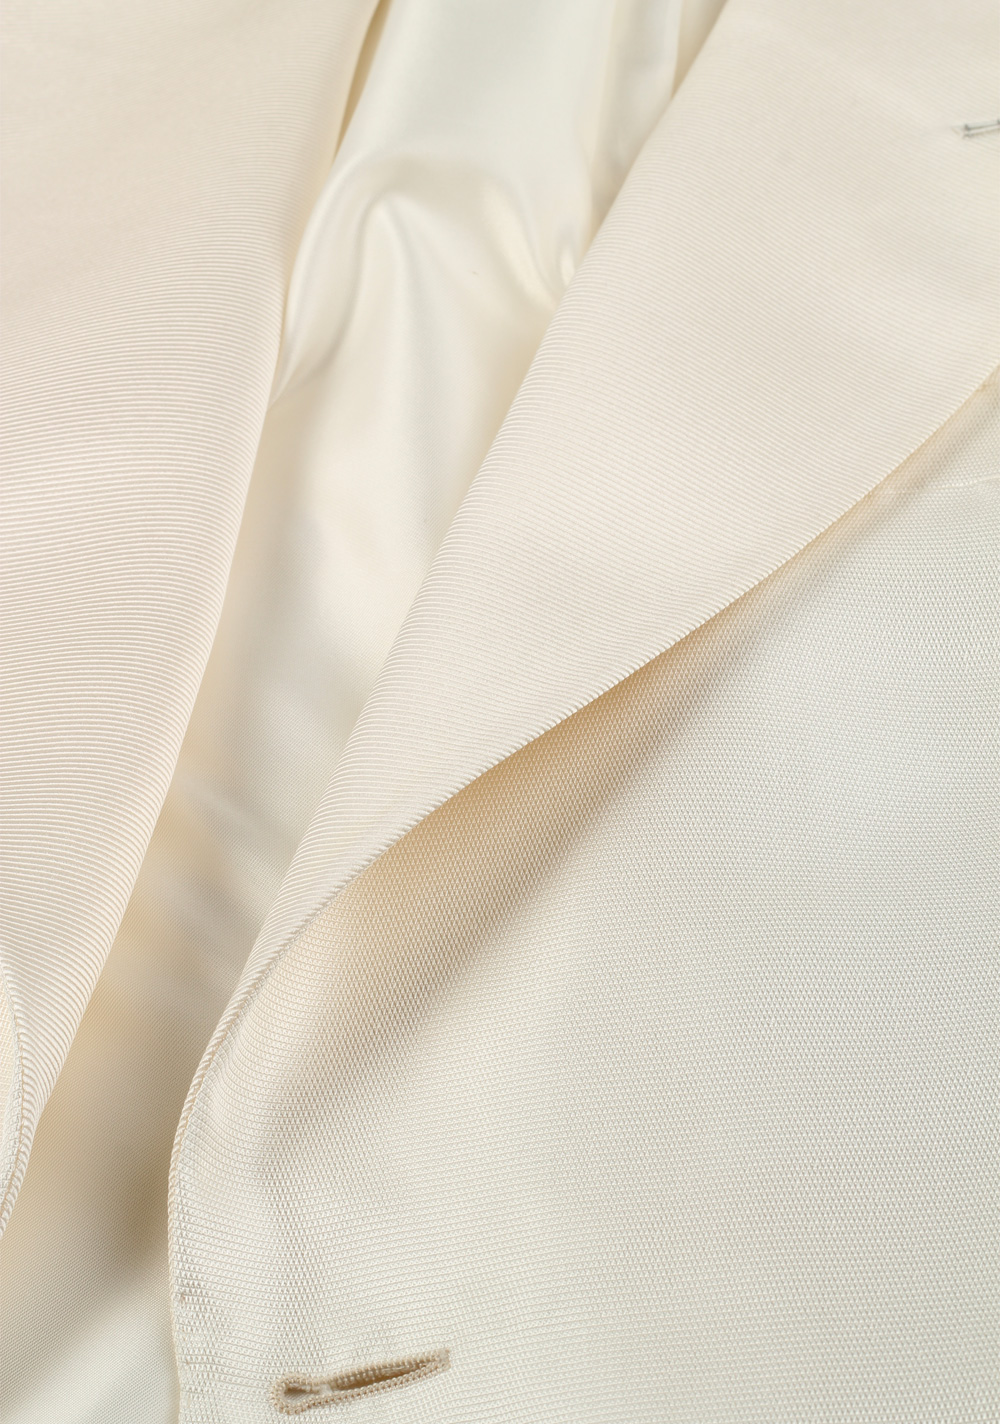 TOM FORD Off White James Bond Spectre Sport Coat Tuxedo Dinner Jacket Size  48 / 38R .